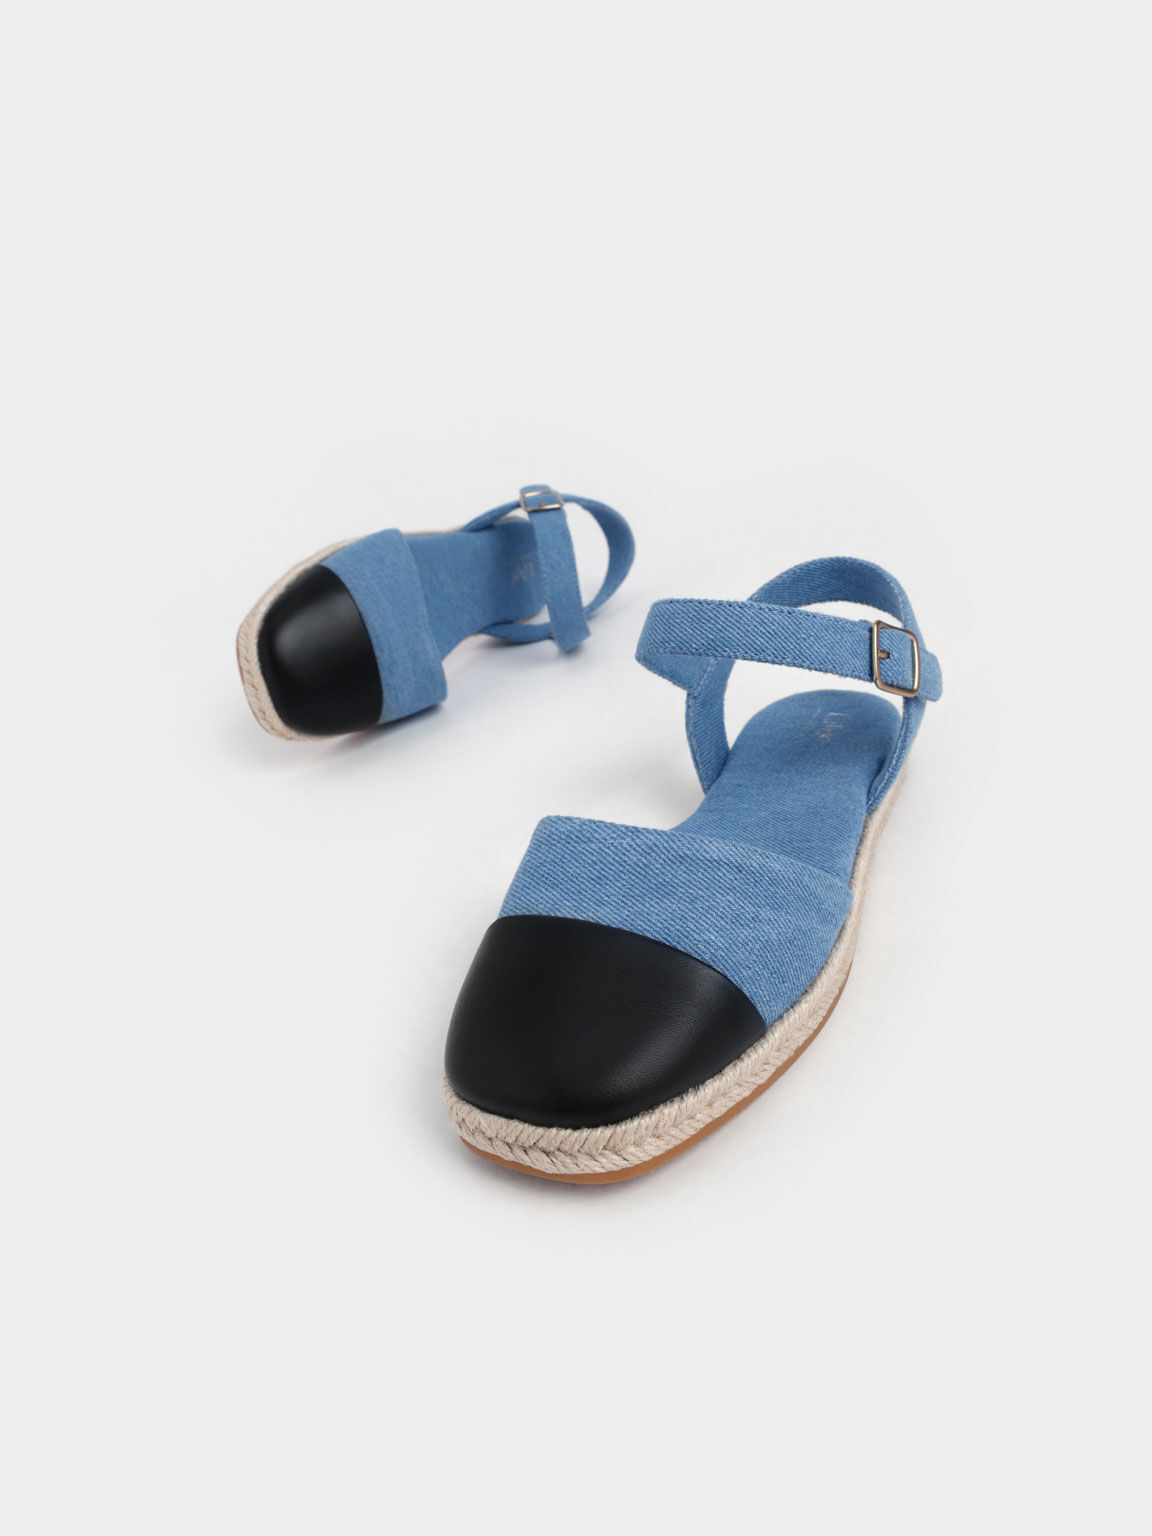 兒童雙色草編涼鞋, 藍色, hi-res